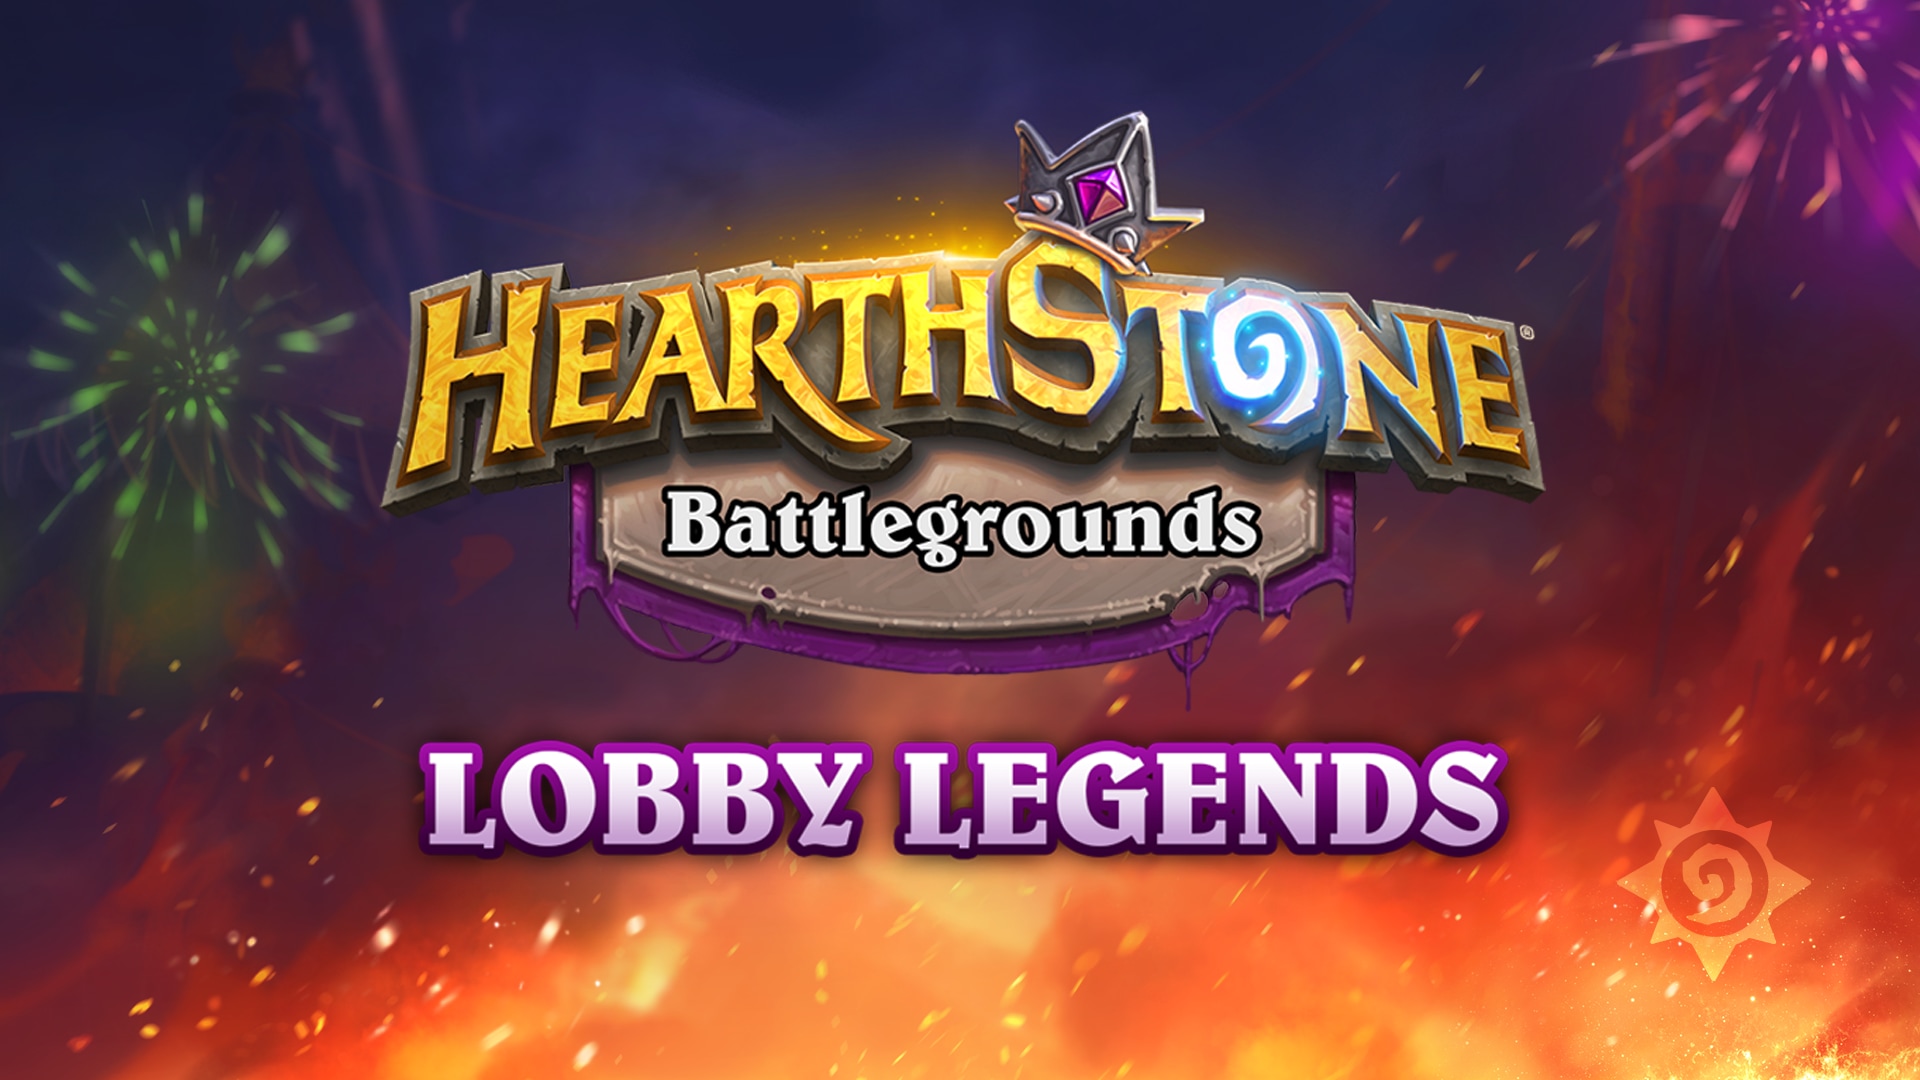 Festiwal Ognia zmierza do Battlegrounds: Lobby Legends!